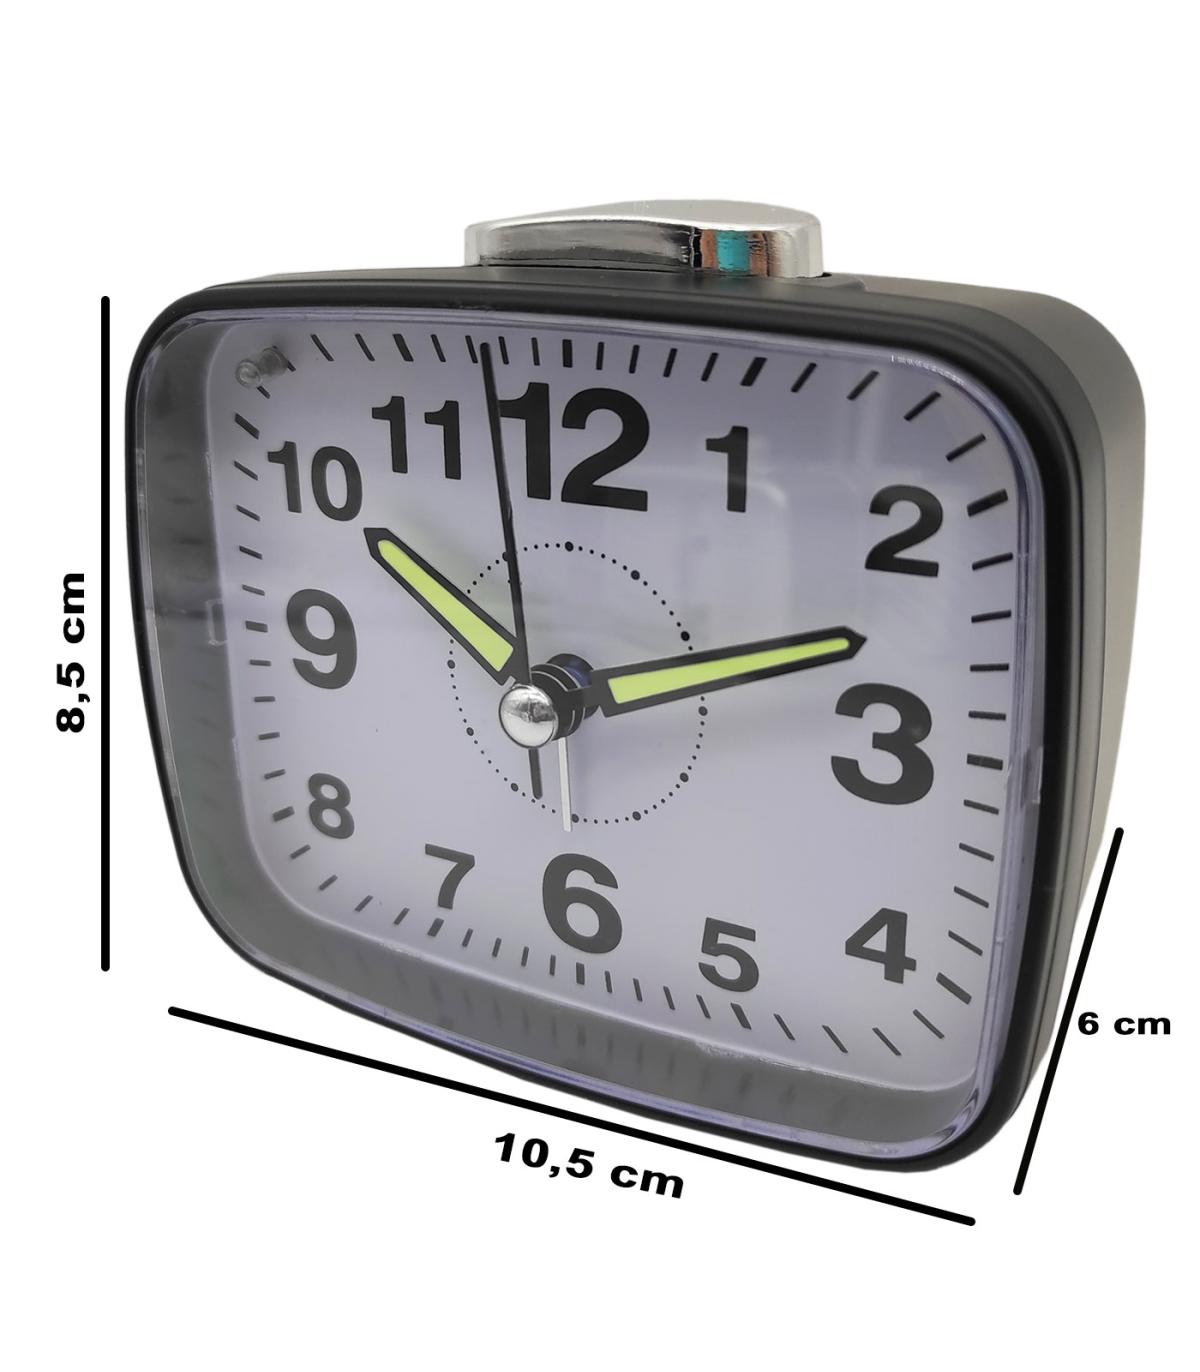 Tradineur - Reloj despertador analógico de plástico, silencioso